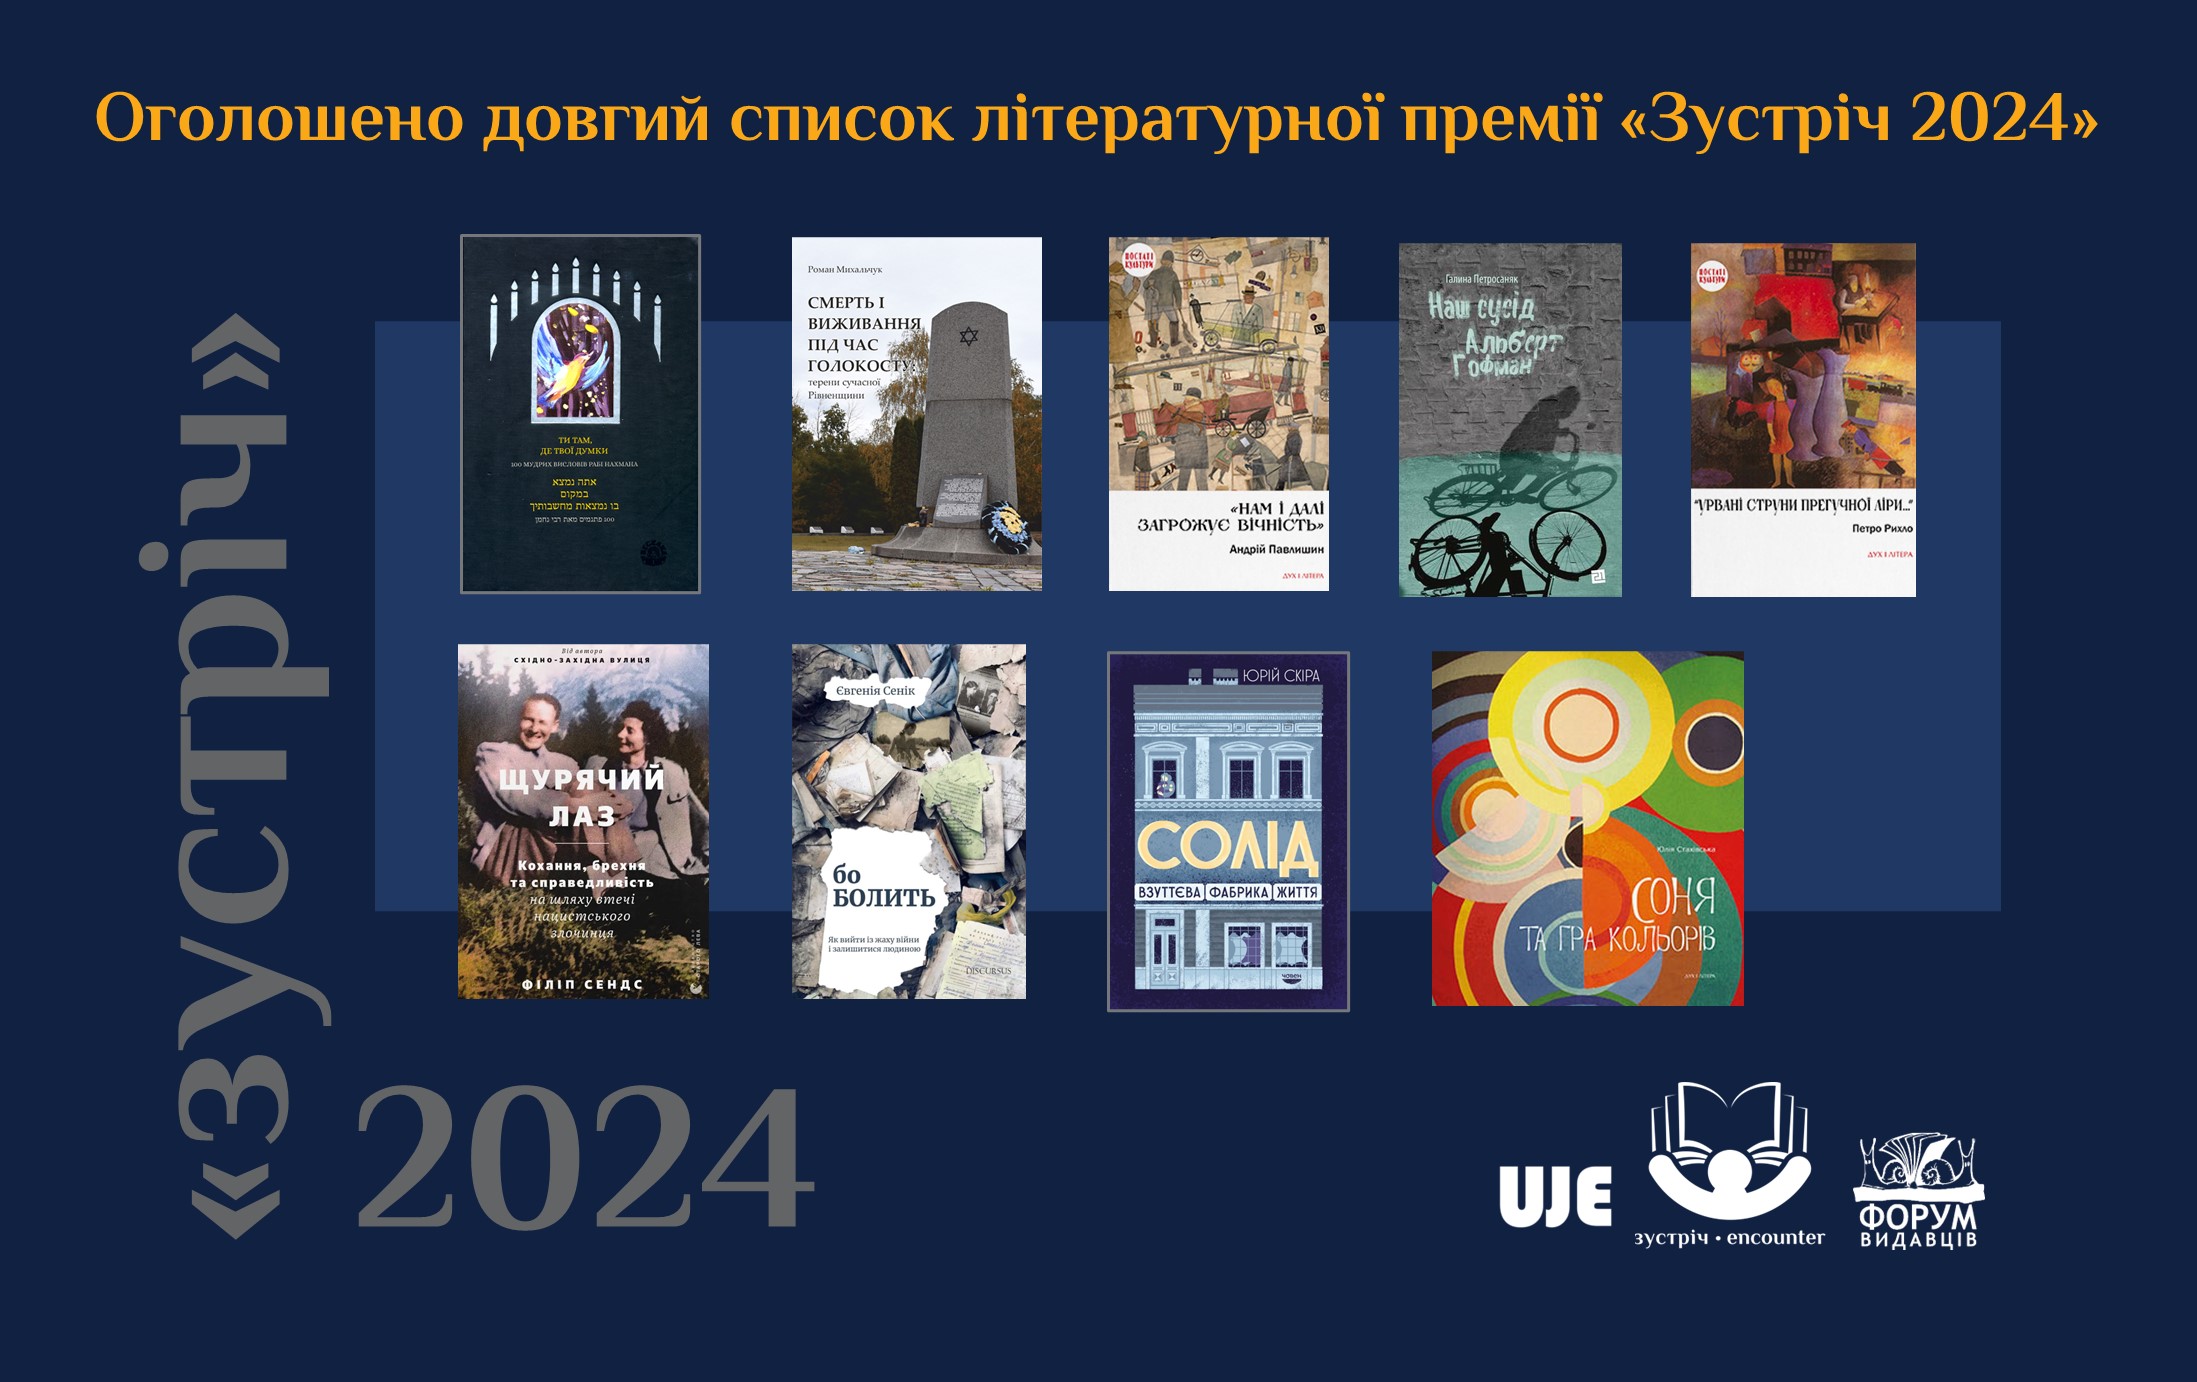 Оголошено довгий список літературної премії «Зустріч-2024»